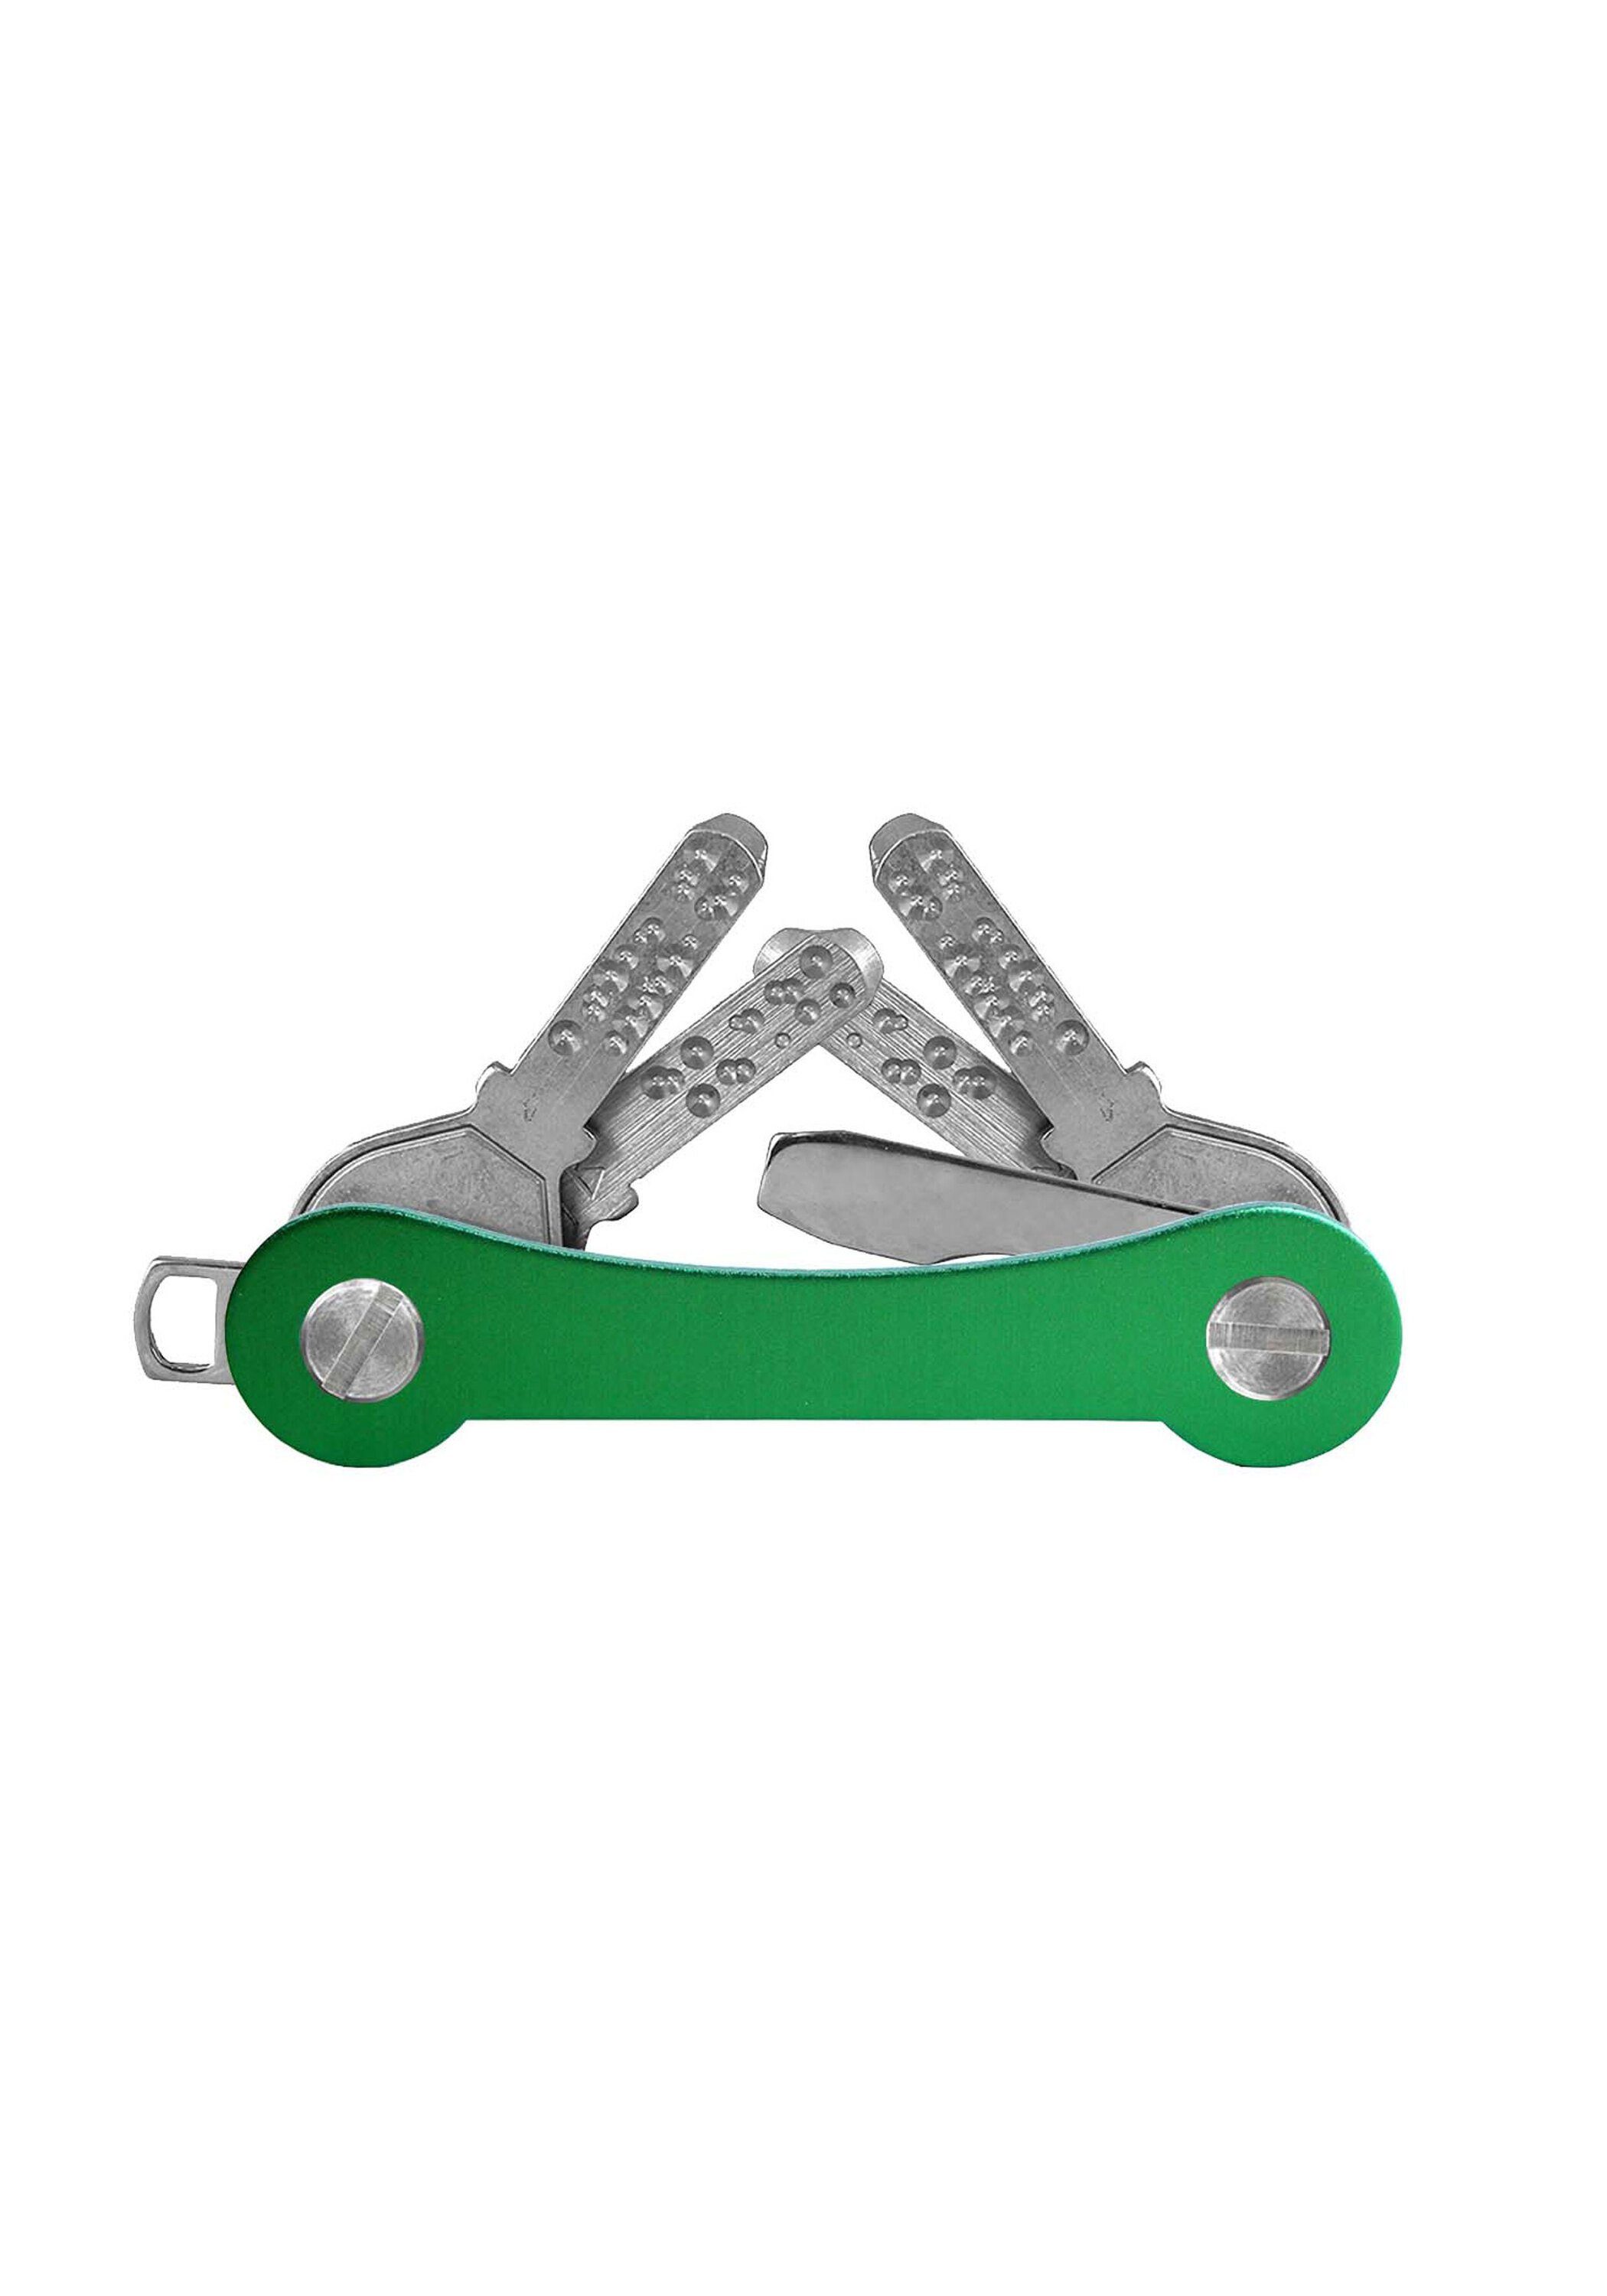 Schlüsselanhänger grün SWISS keycabins Aluminium, made